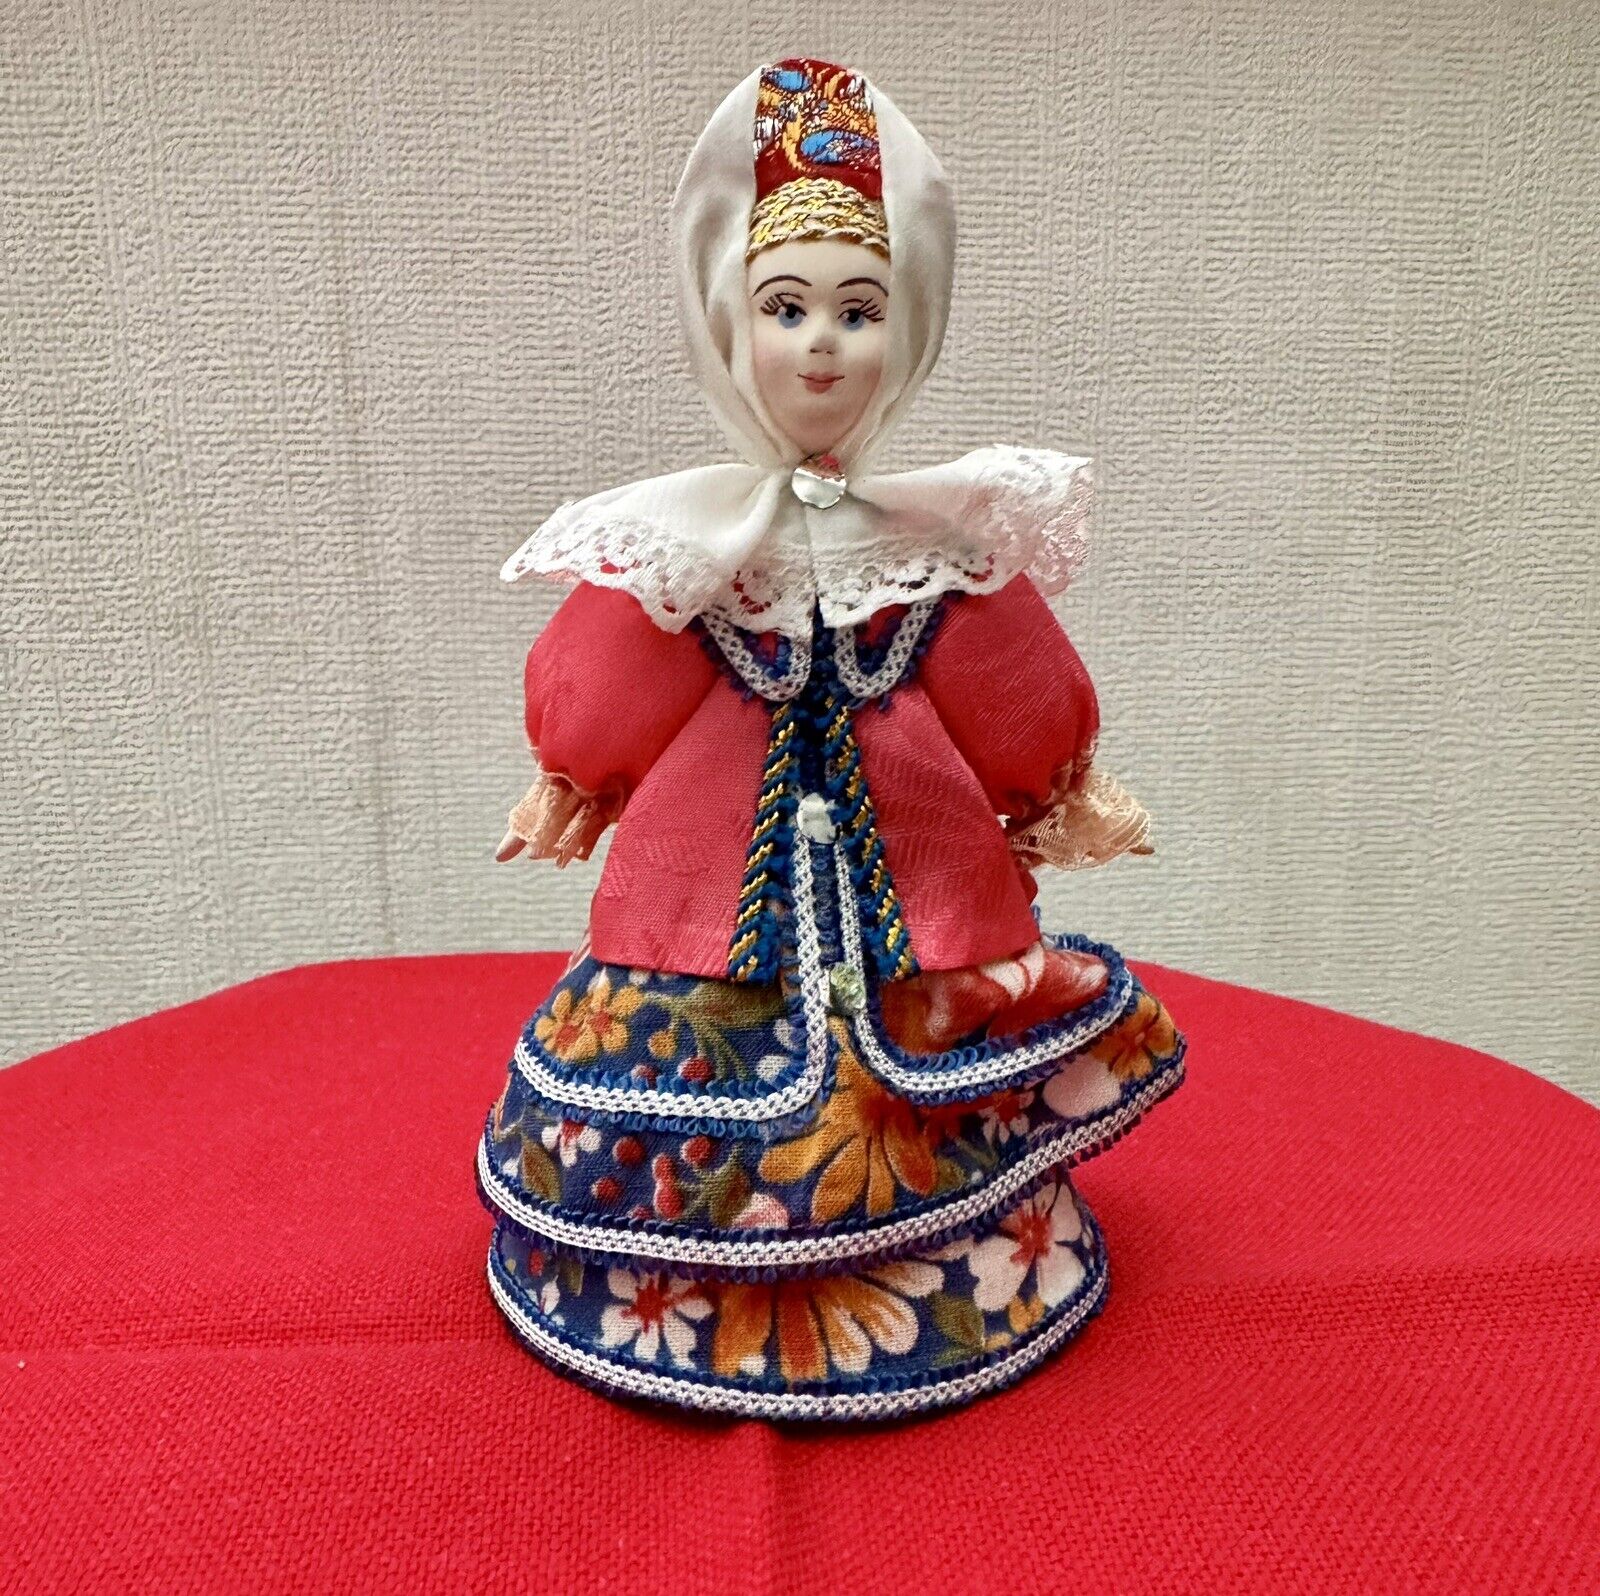 RUSSIAN Traditional Folk Art Doll 6” Tall